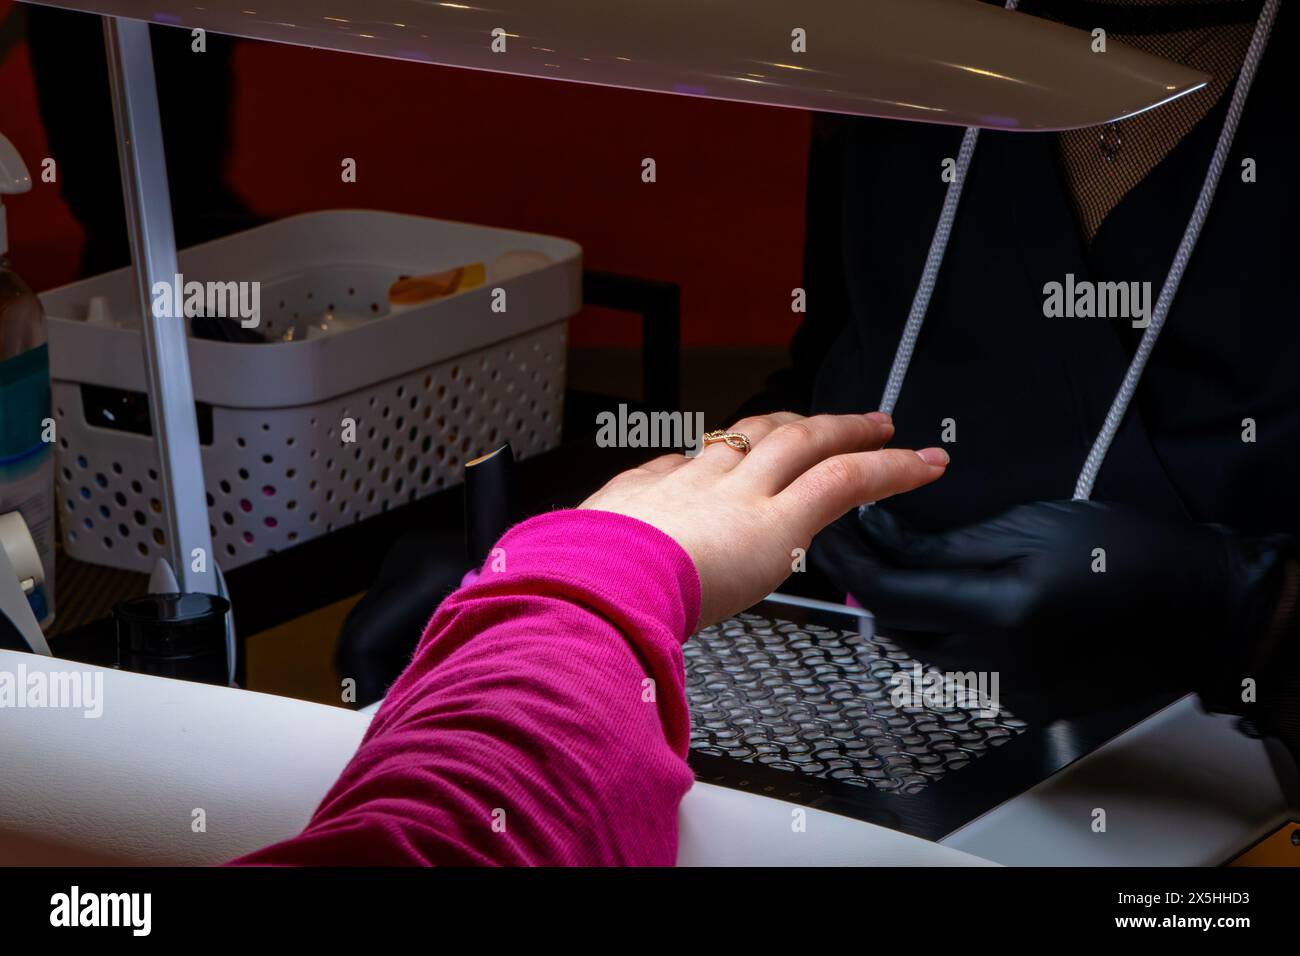 Un maquilleur fait une manucure sur les ongles de son client Banque D'Images